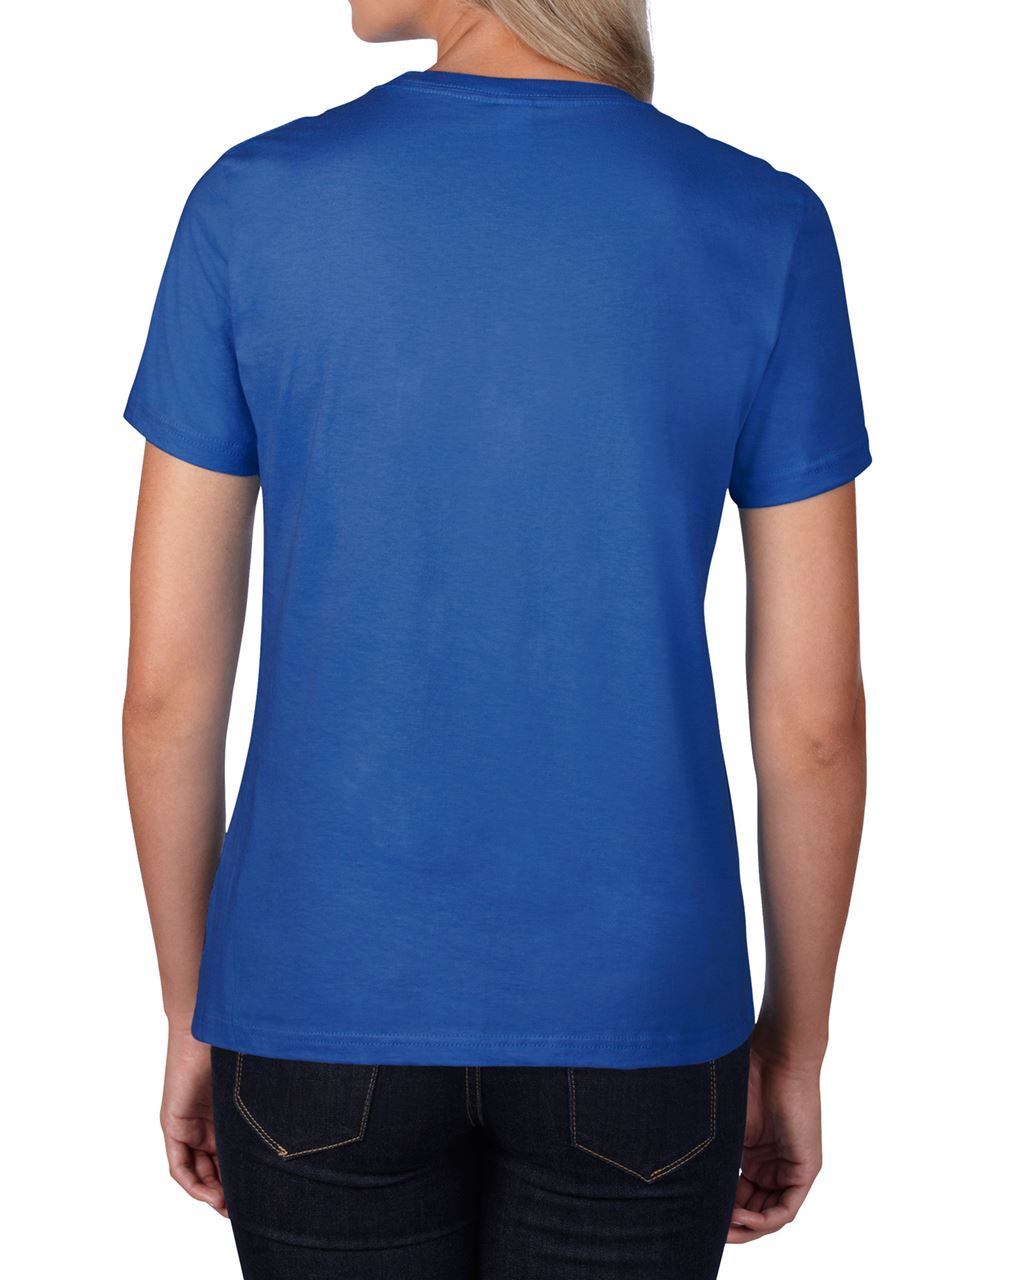 Gildan Damen T-Shirt Bluse Kurzarm U-Ausschnitt Basic Sport Oberteil